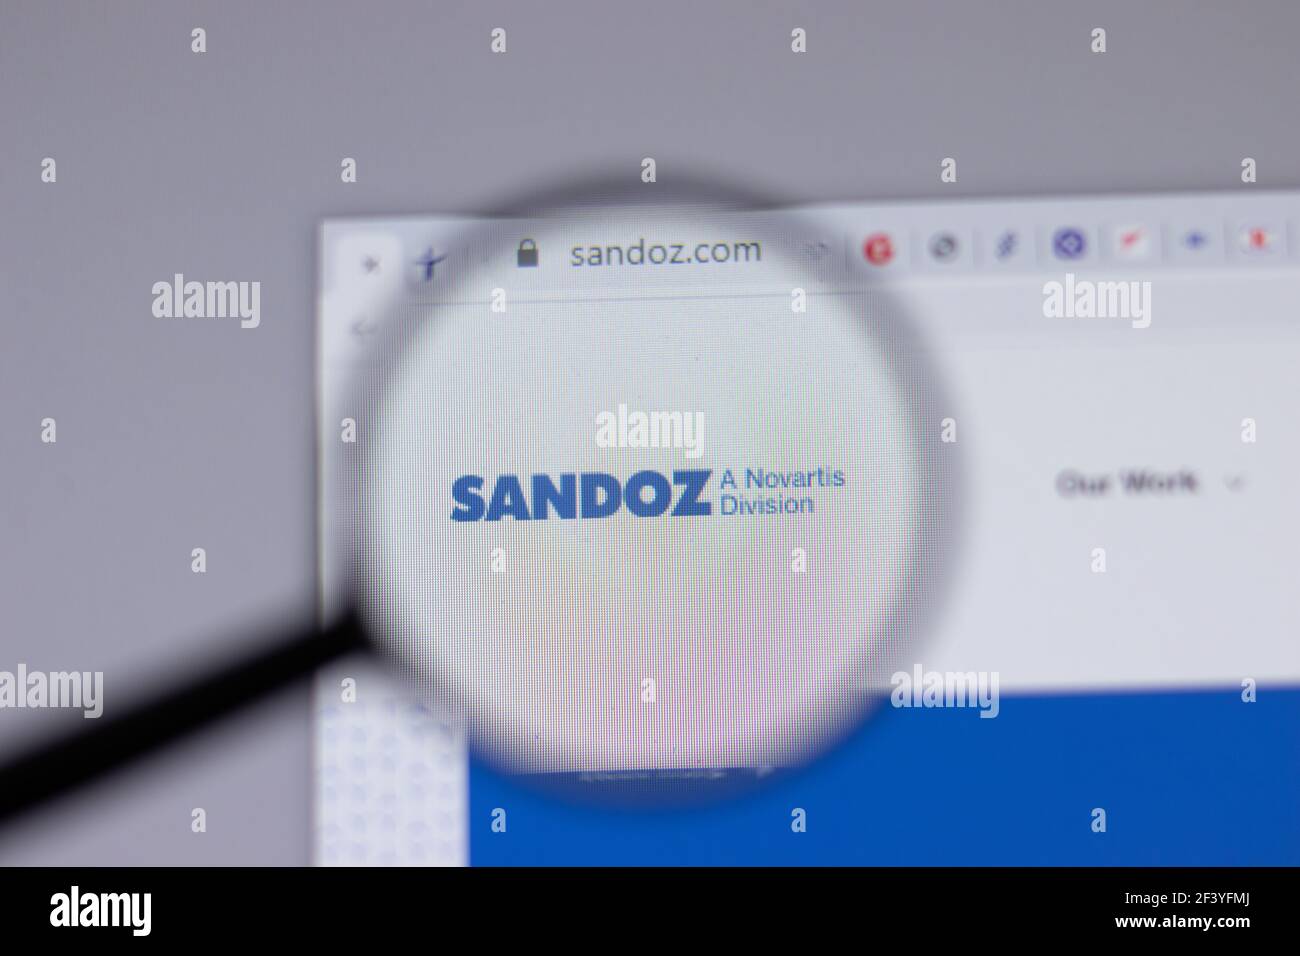 New York, USA - 18 Marzo 2021: Icona del logo aziendale Sandoz sul sito web, Editoriale illustrativo Foto Stock